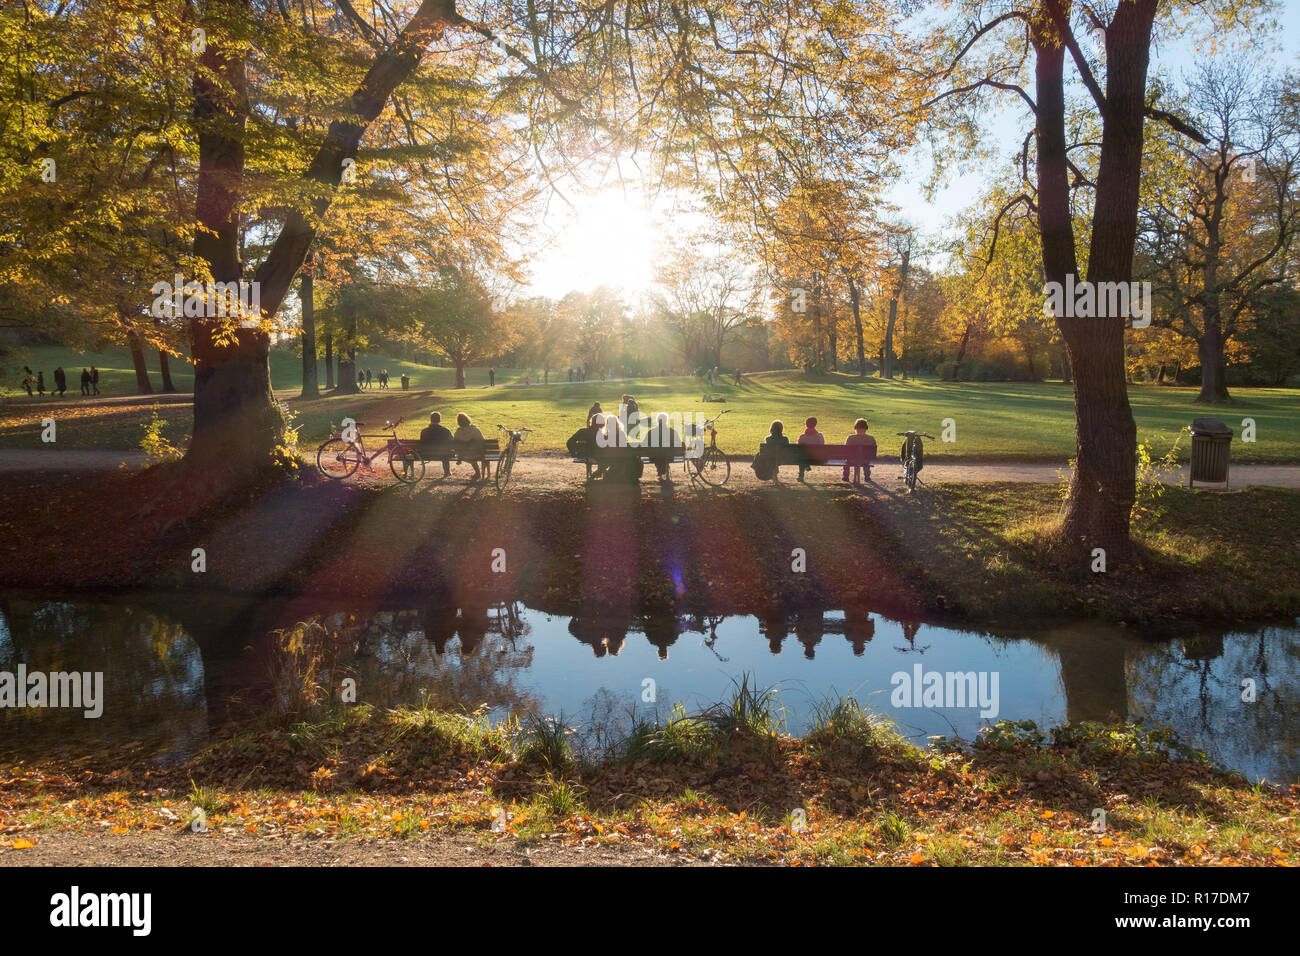 Englischer Garten Park in autumn, Munich, Germany Stock Photo